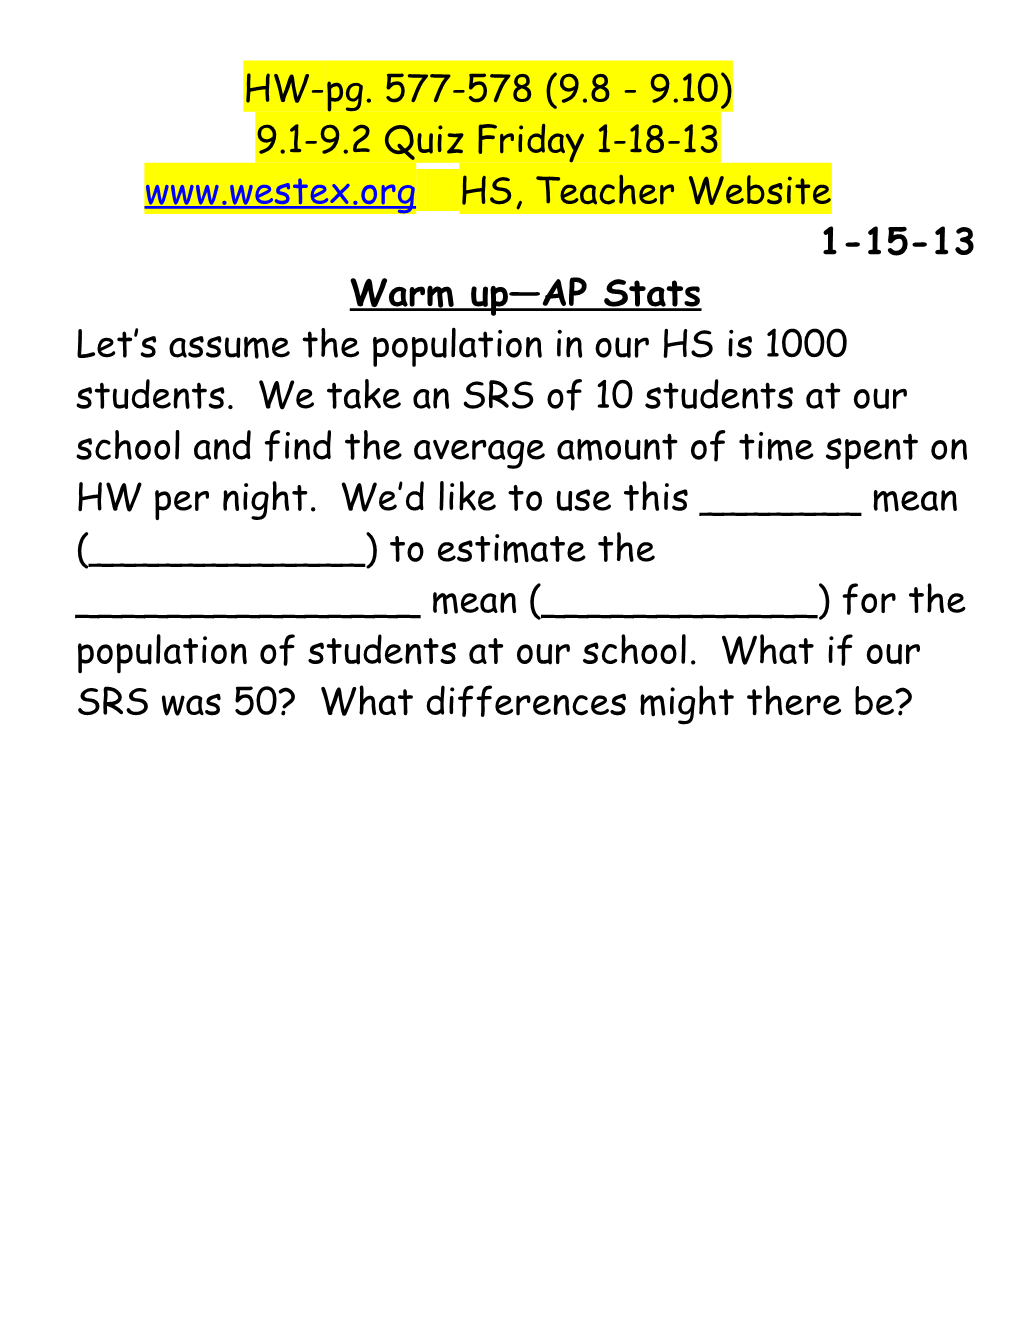 HS, Teacher Website